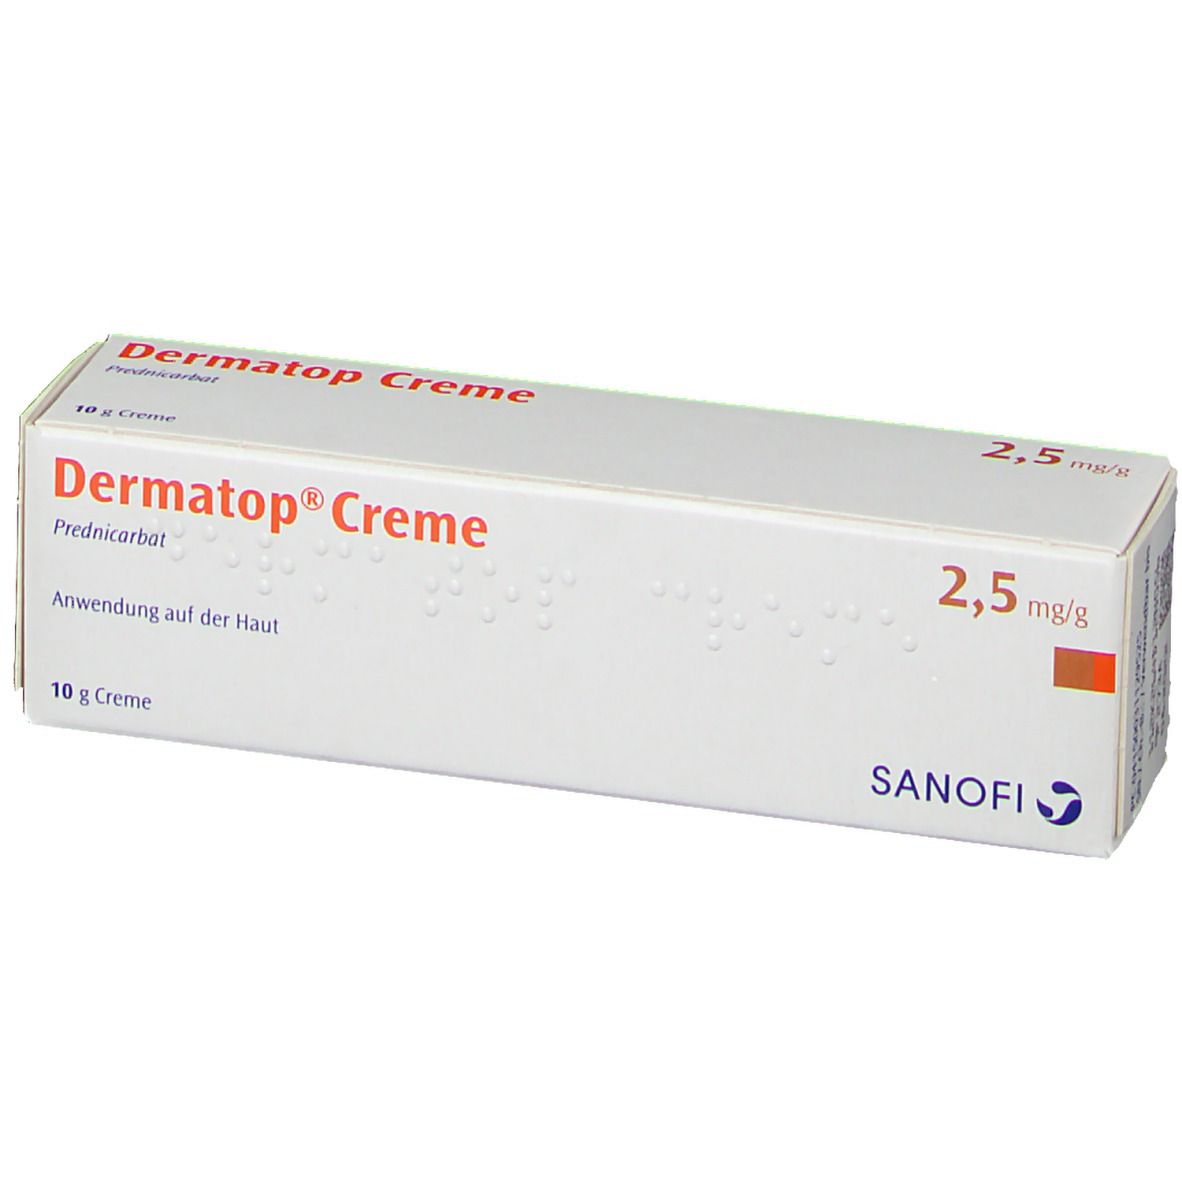 Dermatop® Creme 2,5 mg/g